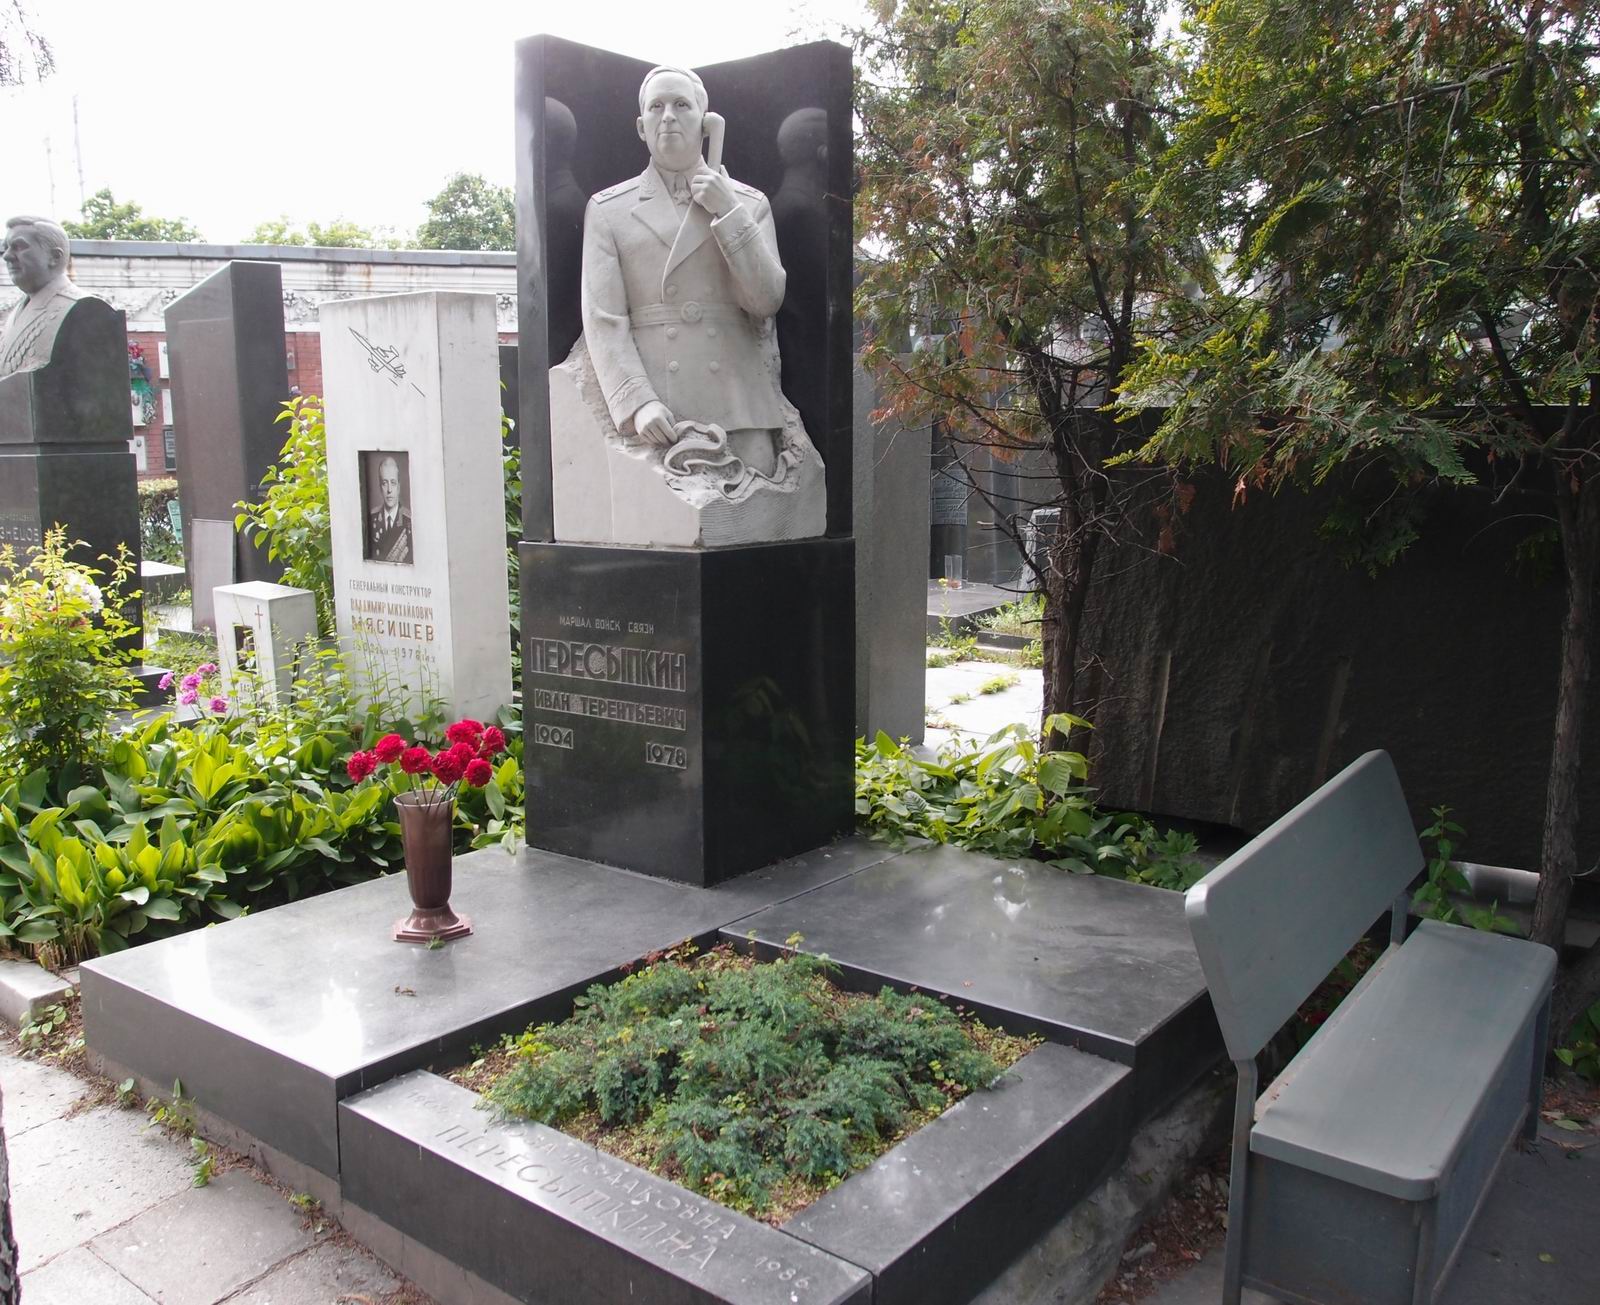 Памятник на могиле Пересыпкина И.Т. (1904-1978), ск. А.Елецкий, на Новодевичьем кладбище (7-15-13). Нажмите левую кнопку мыши чтобы увидеть фрагмент памятника.